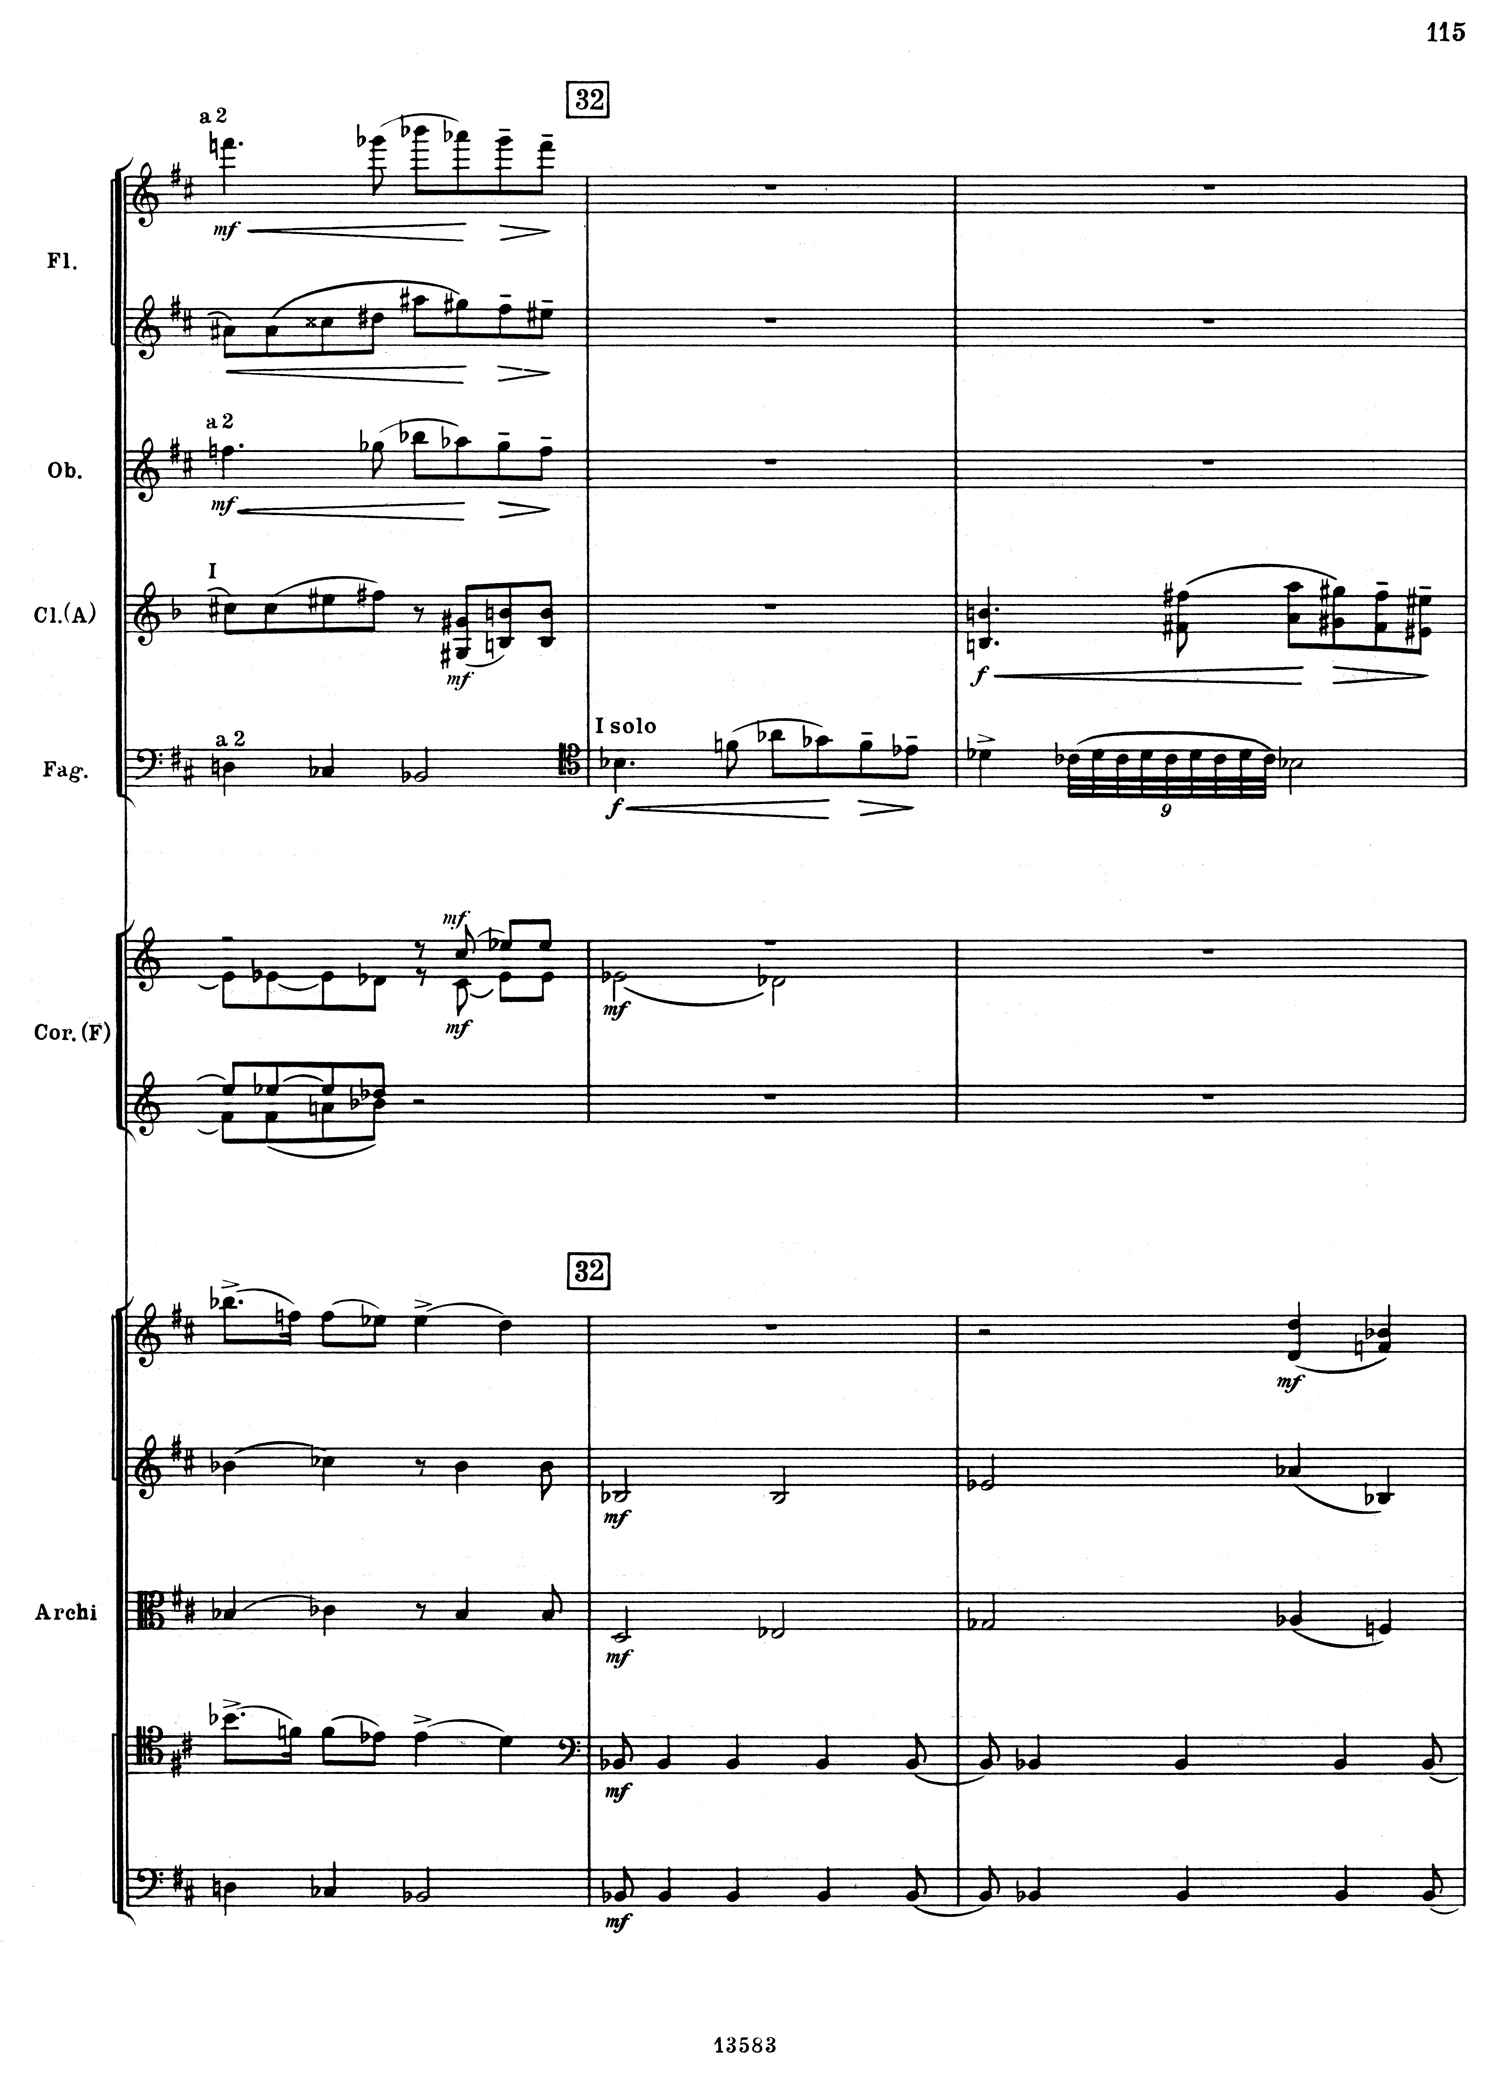 Tchaikovsky 5 Mvt 2 Score 3.jpg